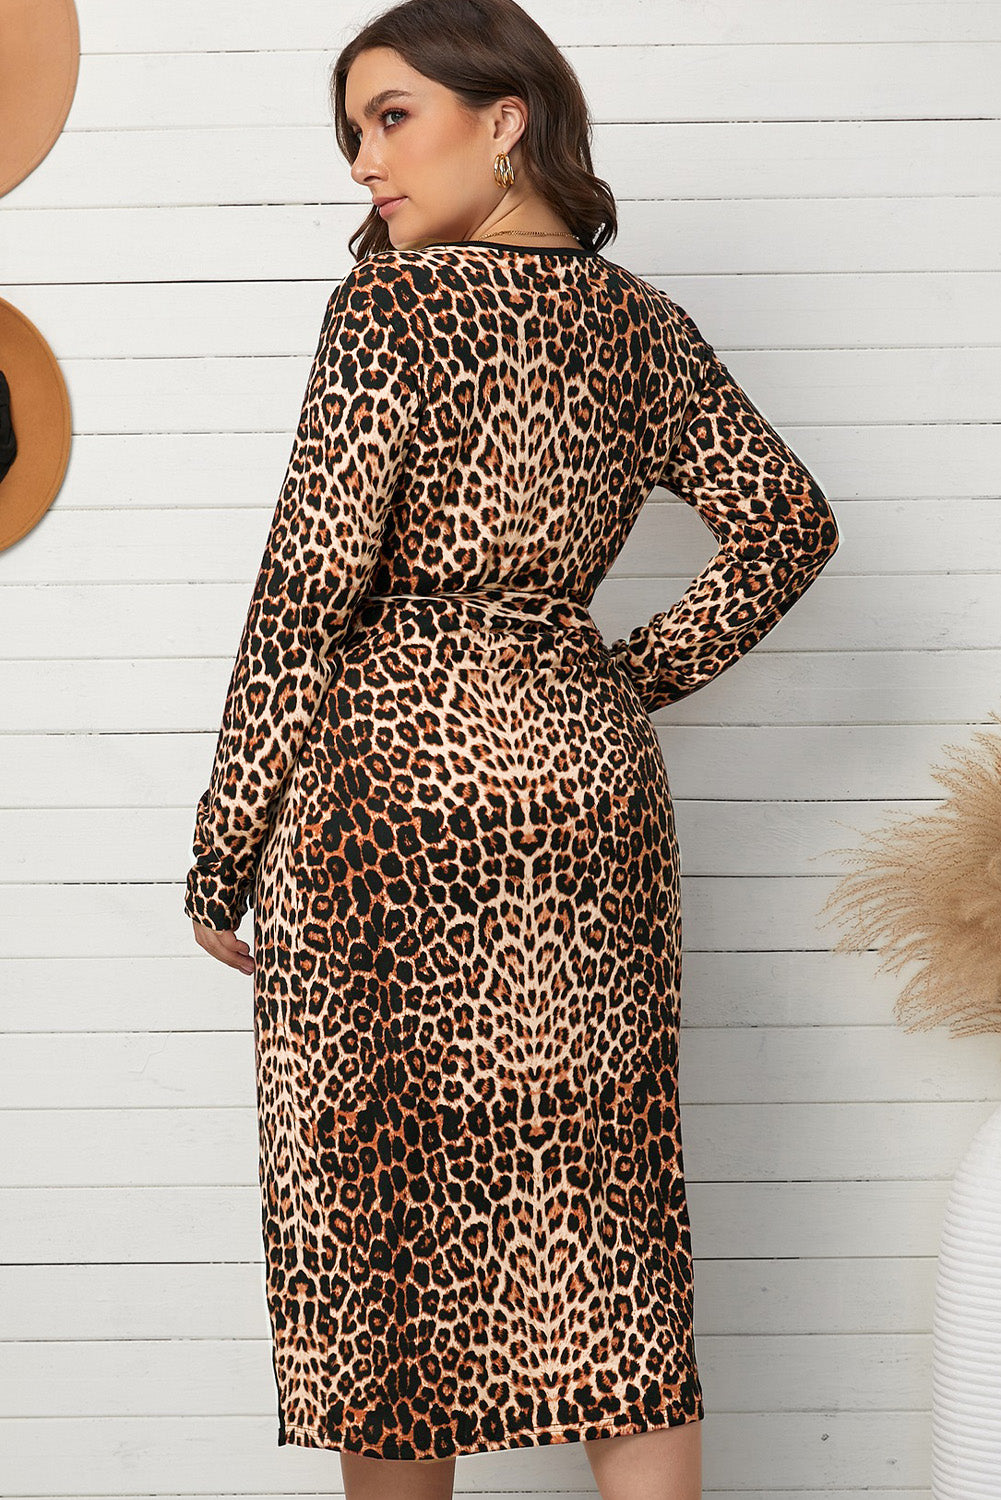 Plus Size Leopard Print Waist Tied Belted Surplice Wrap Dress